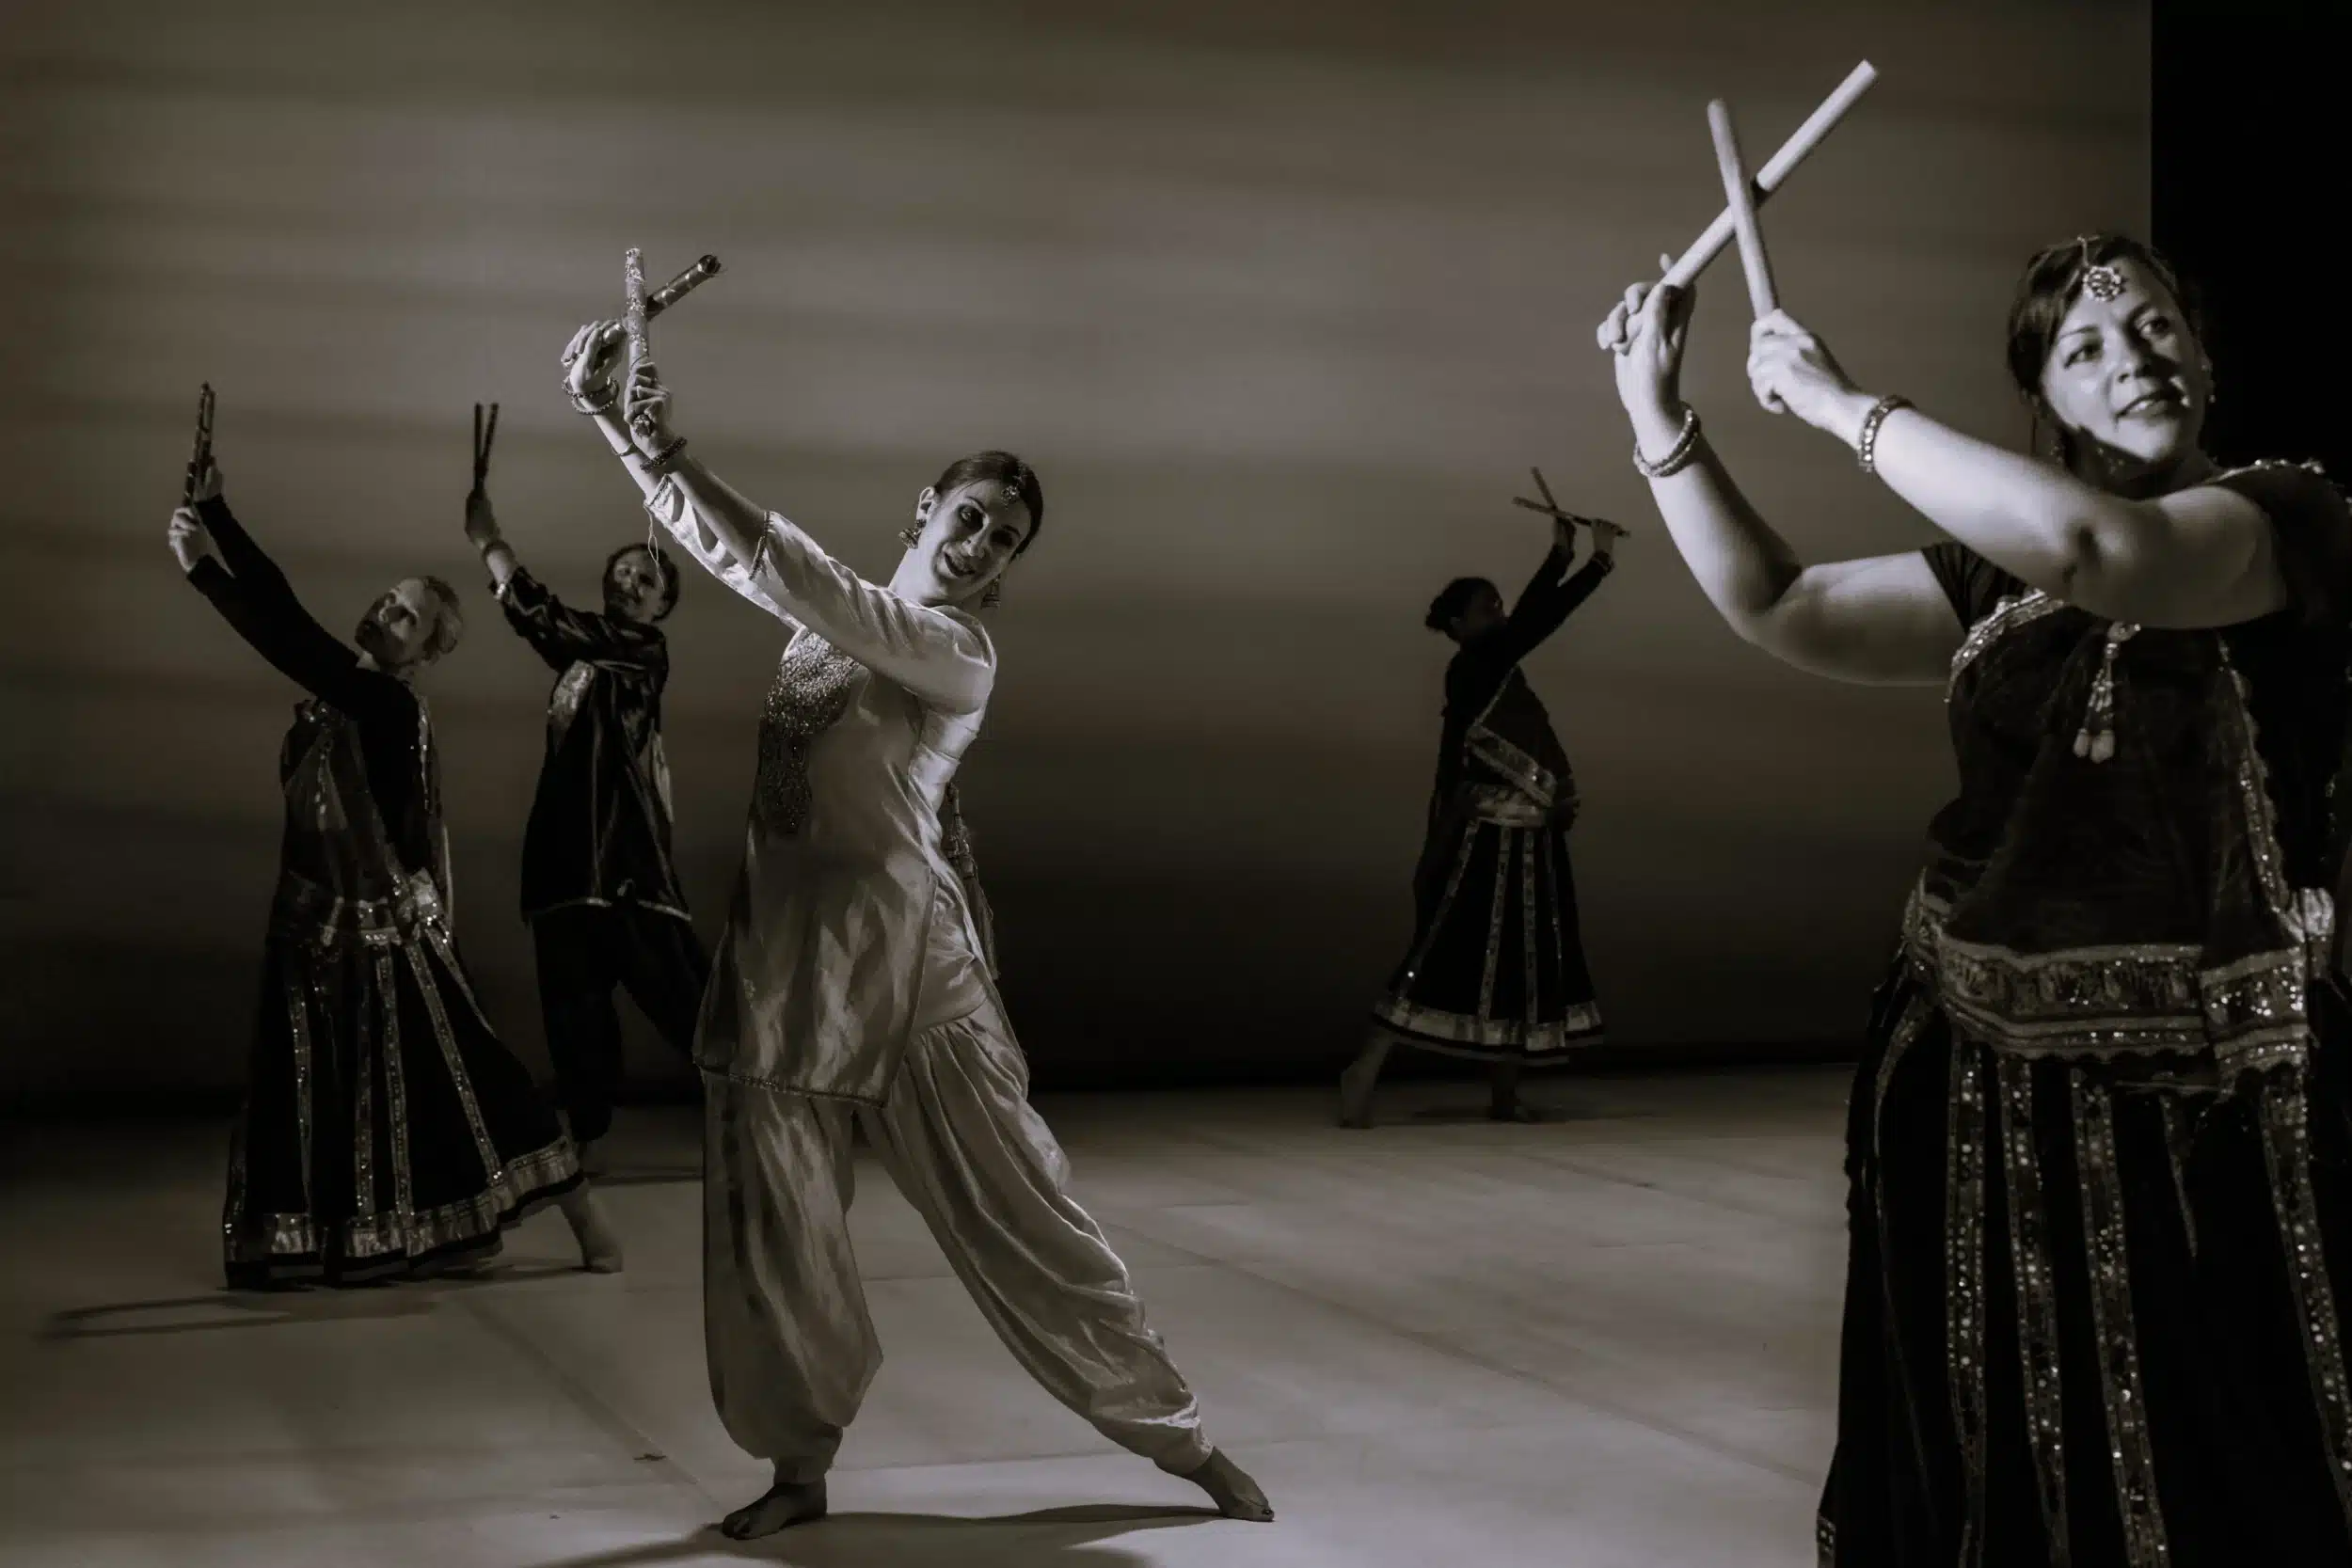 Danse indienne